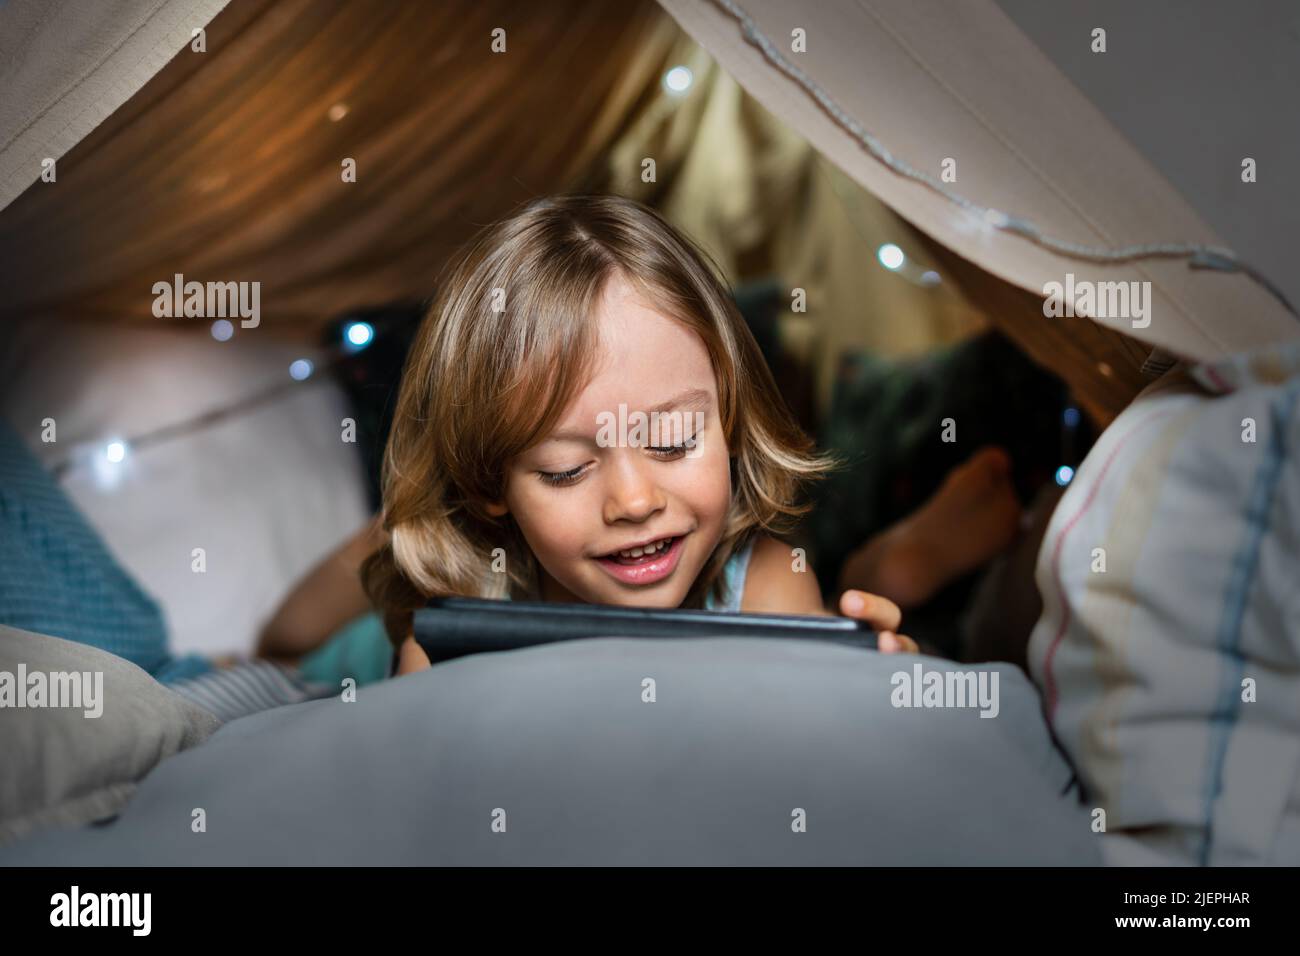 Glücklich niedlichen kleinen 6 Jahre alten Jungen Spaß im Tipi Zelt spielen. Kind, das ein digitales Tablet benutzt, um sich Cartoons anzusehen oder Computerspiele zu spielen, die zu Hause im Kinderzelt liegen. Stockfoto